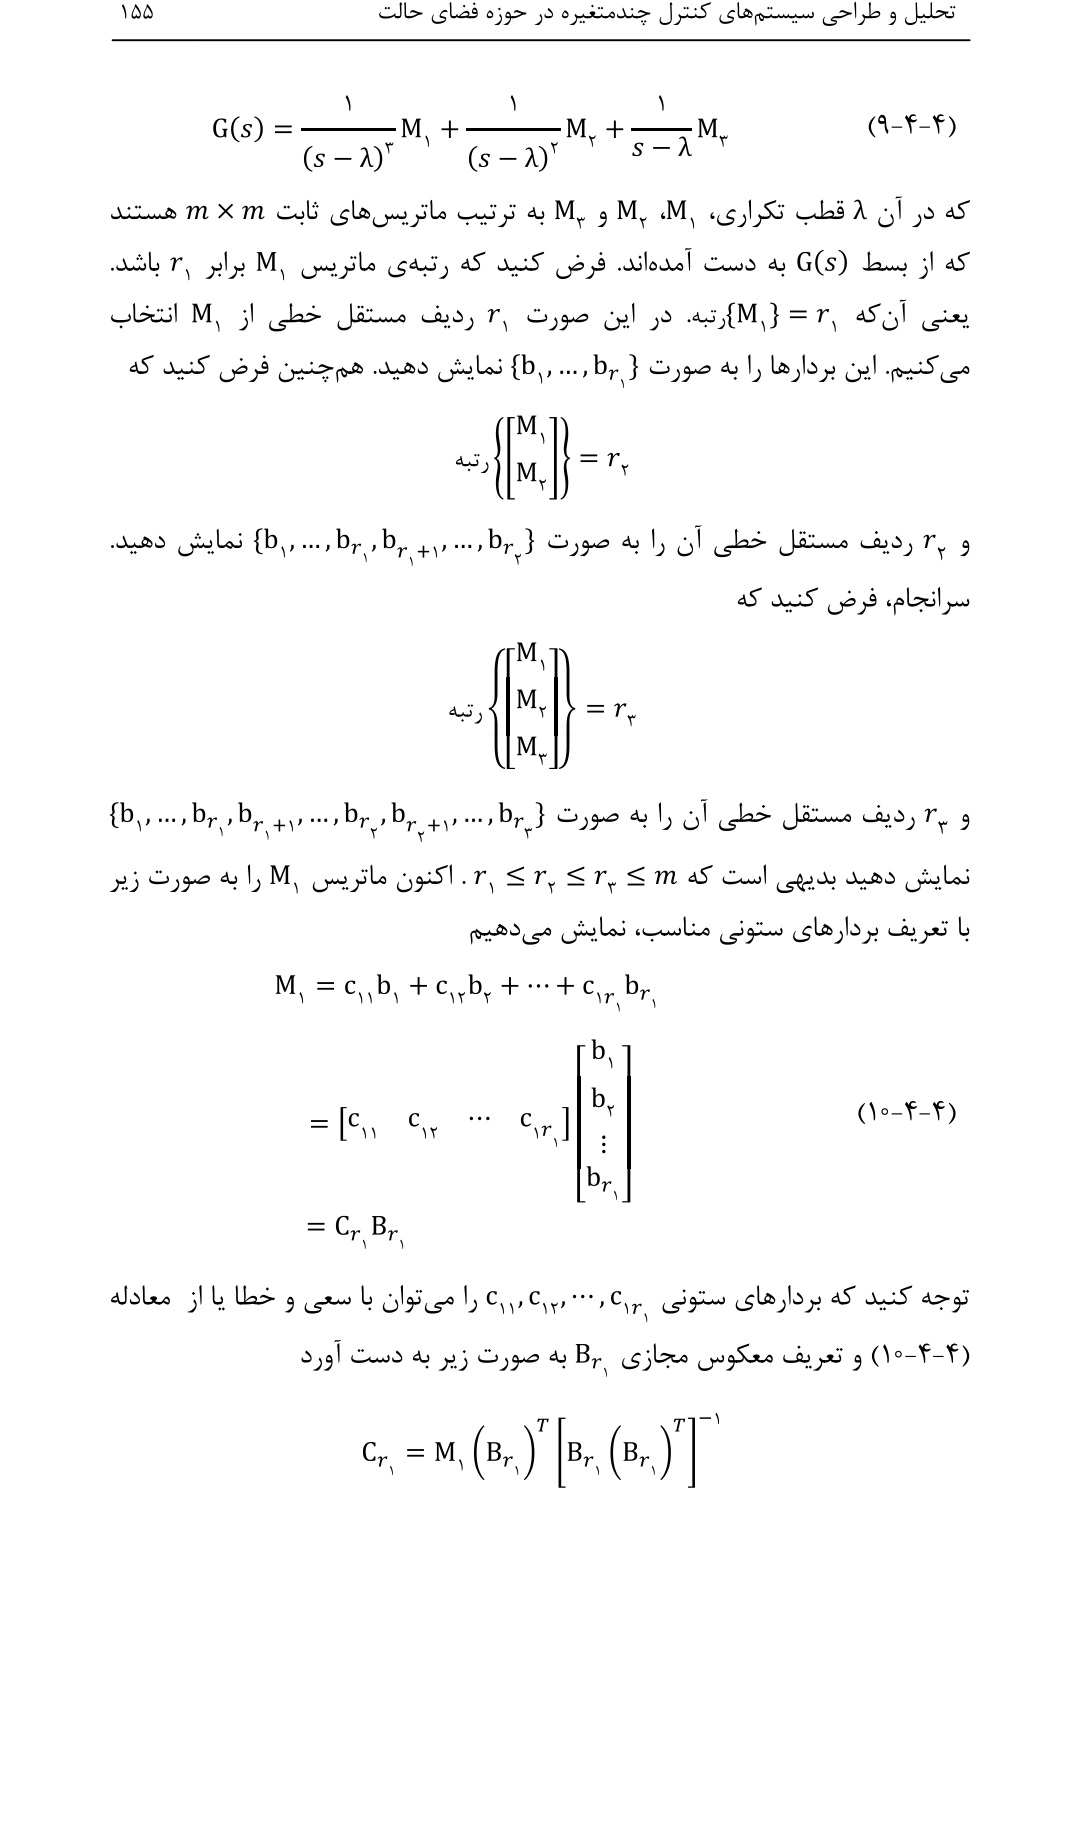 دانلود کتاب تحلیل و طراحی سیستم های کنترل چند متغیره از علی خاکی صدیق - 429 صفحه PDF